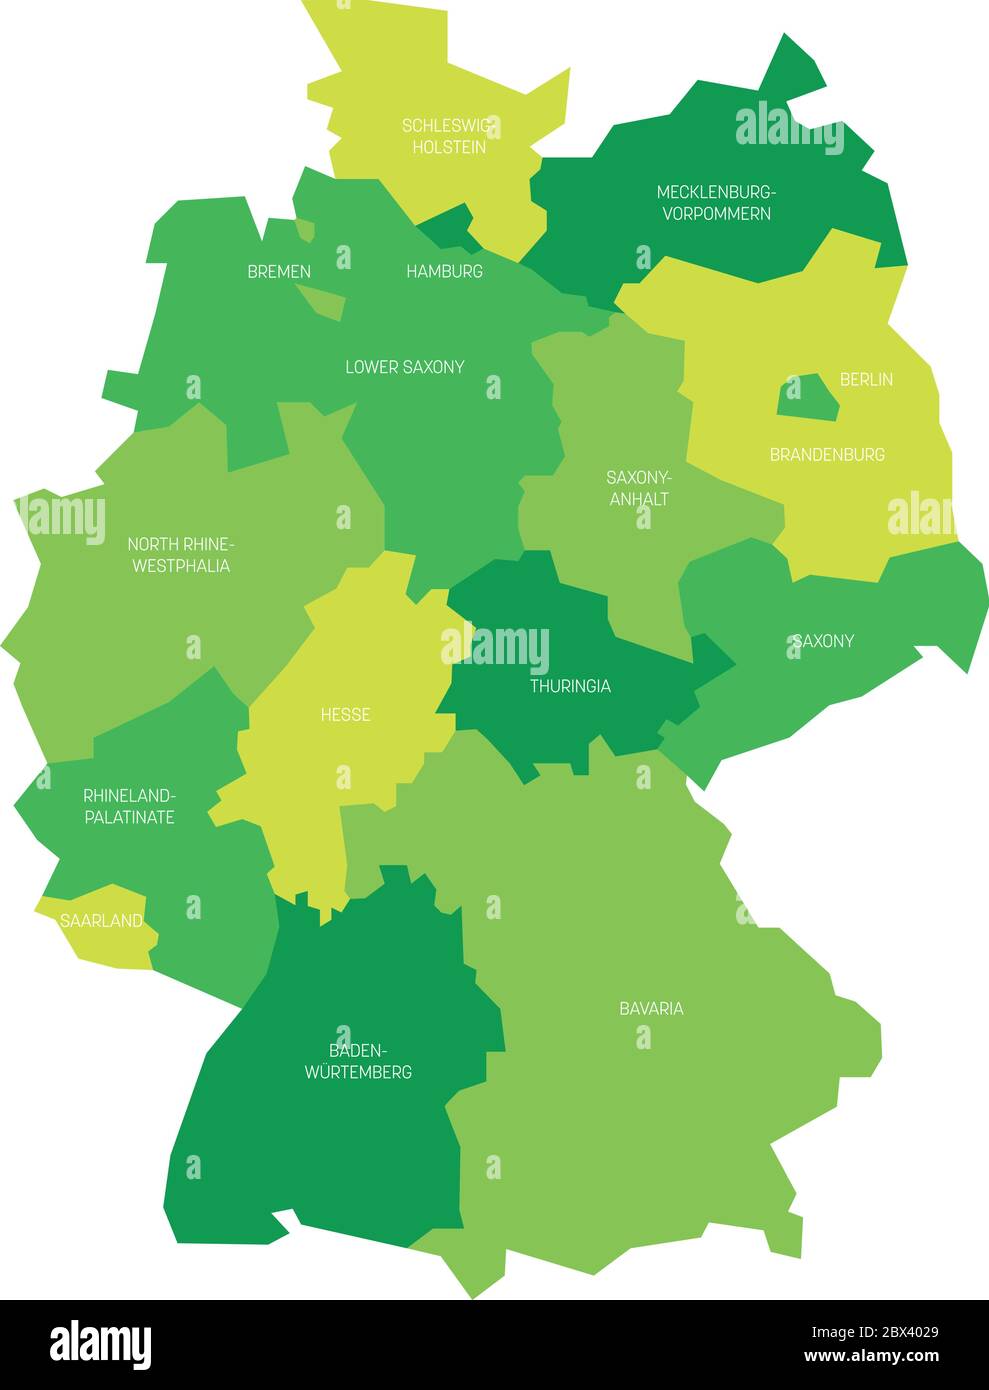 Karte von Deutschland aufgeteilt in 13 Bundesländer und 3 Stadtstaaten - Berlin, Bremen und Hamburg, Europa. Einfache flache Vektorkarte in Grüntönen. Stock Vektor